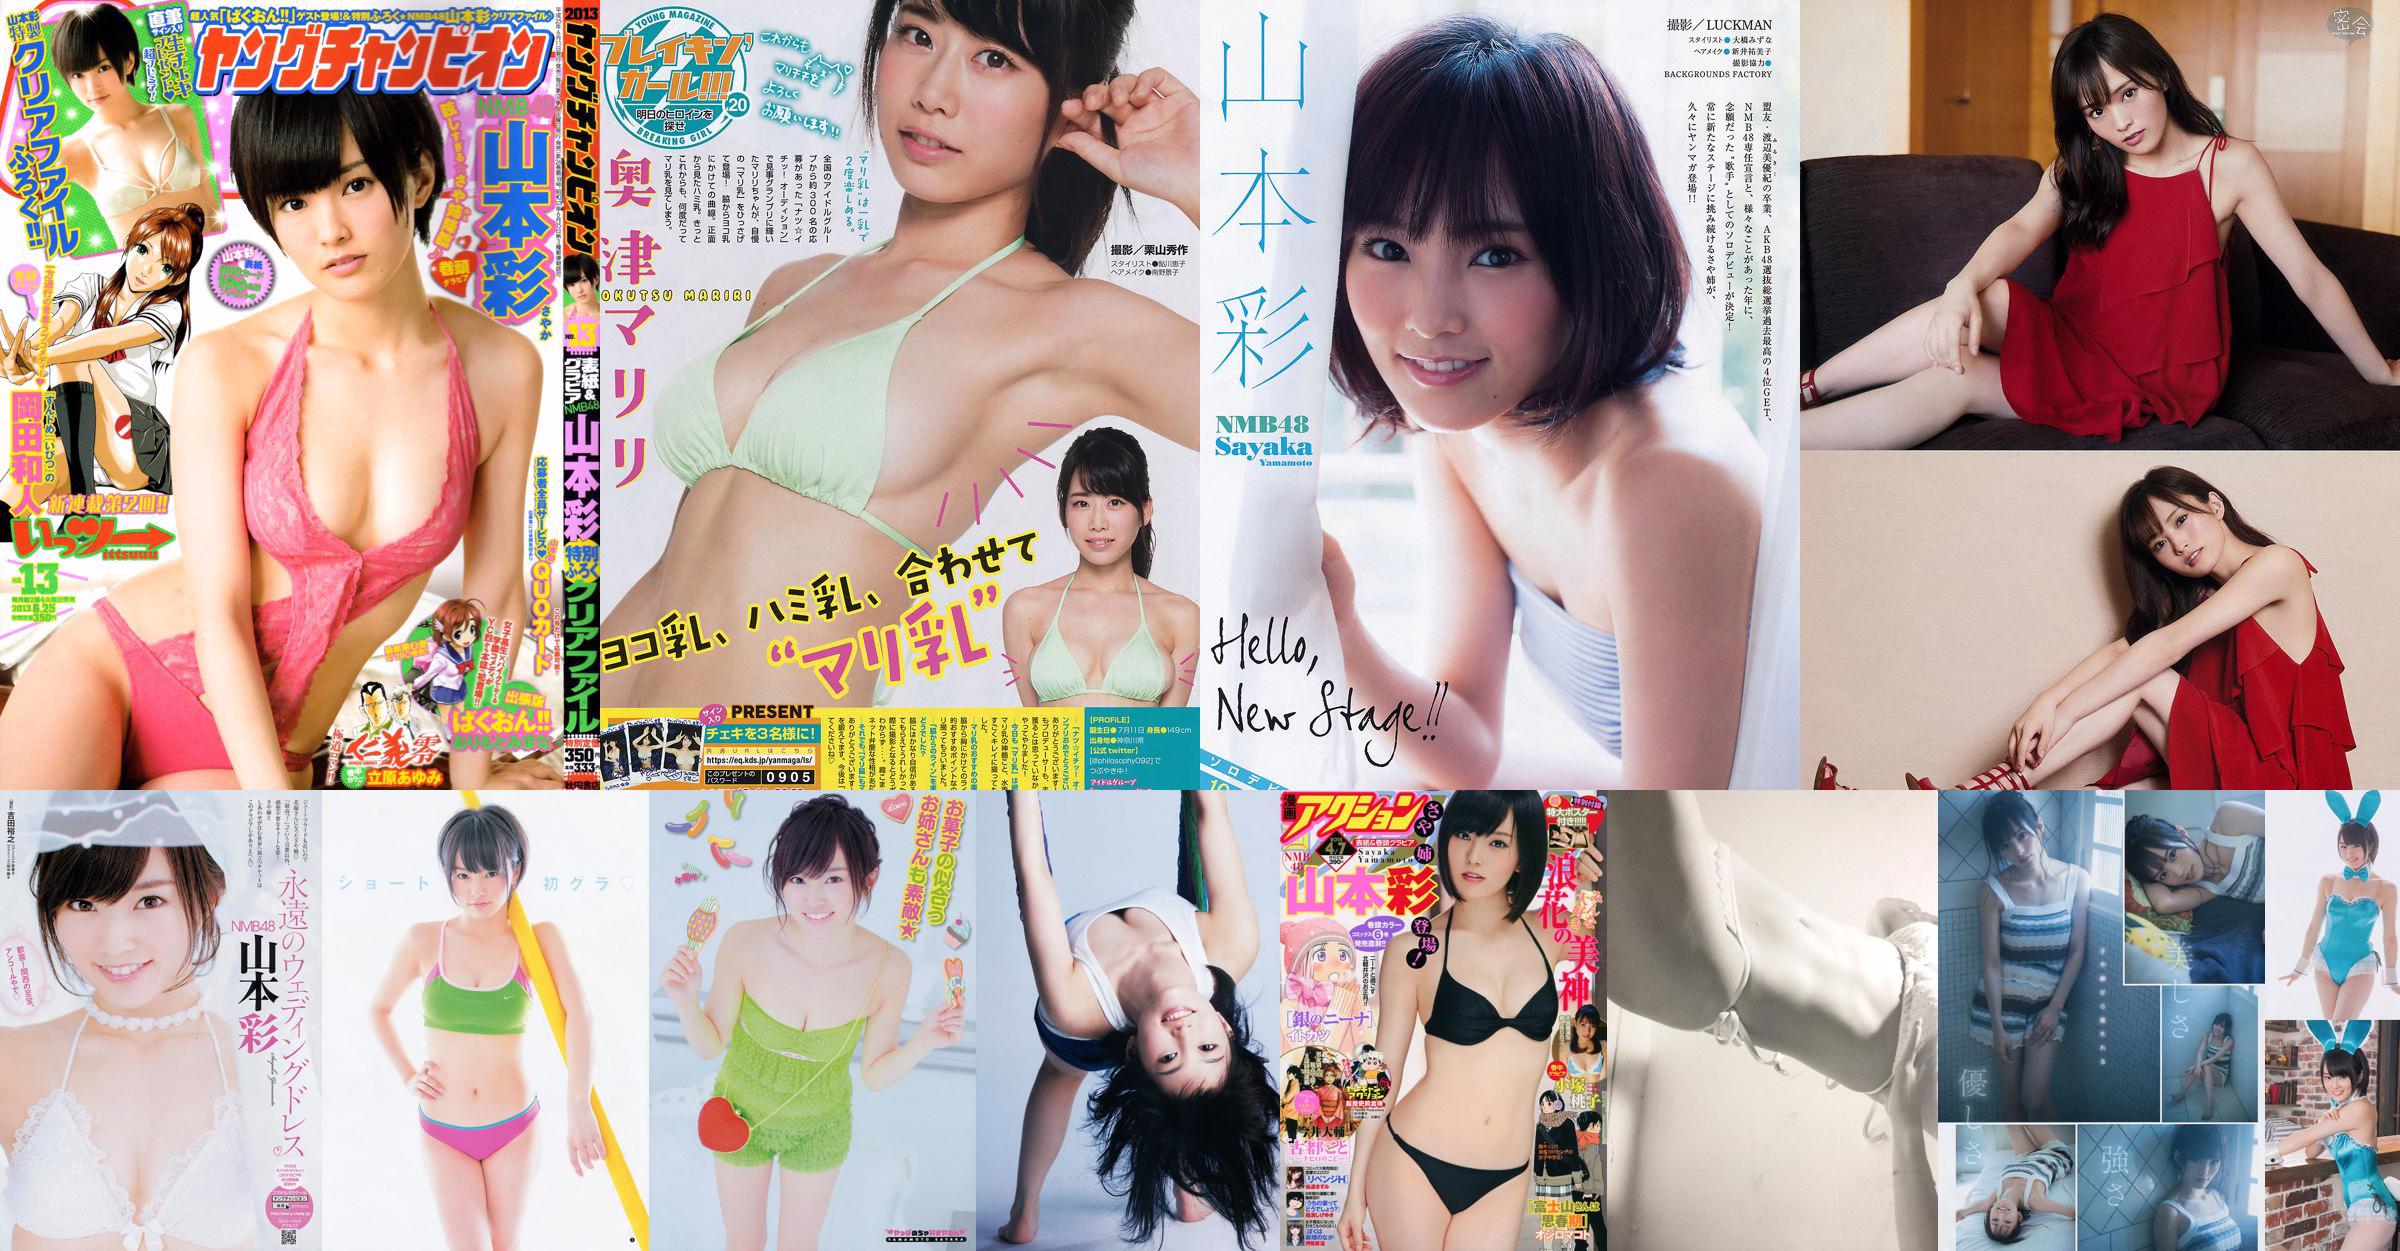 Sayaka Yamamoto Chiyo Koma Nanase Nishino [Weekly Young Jump] 2014 No.32 Photograph No.759424 หน้า 2